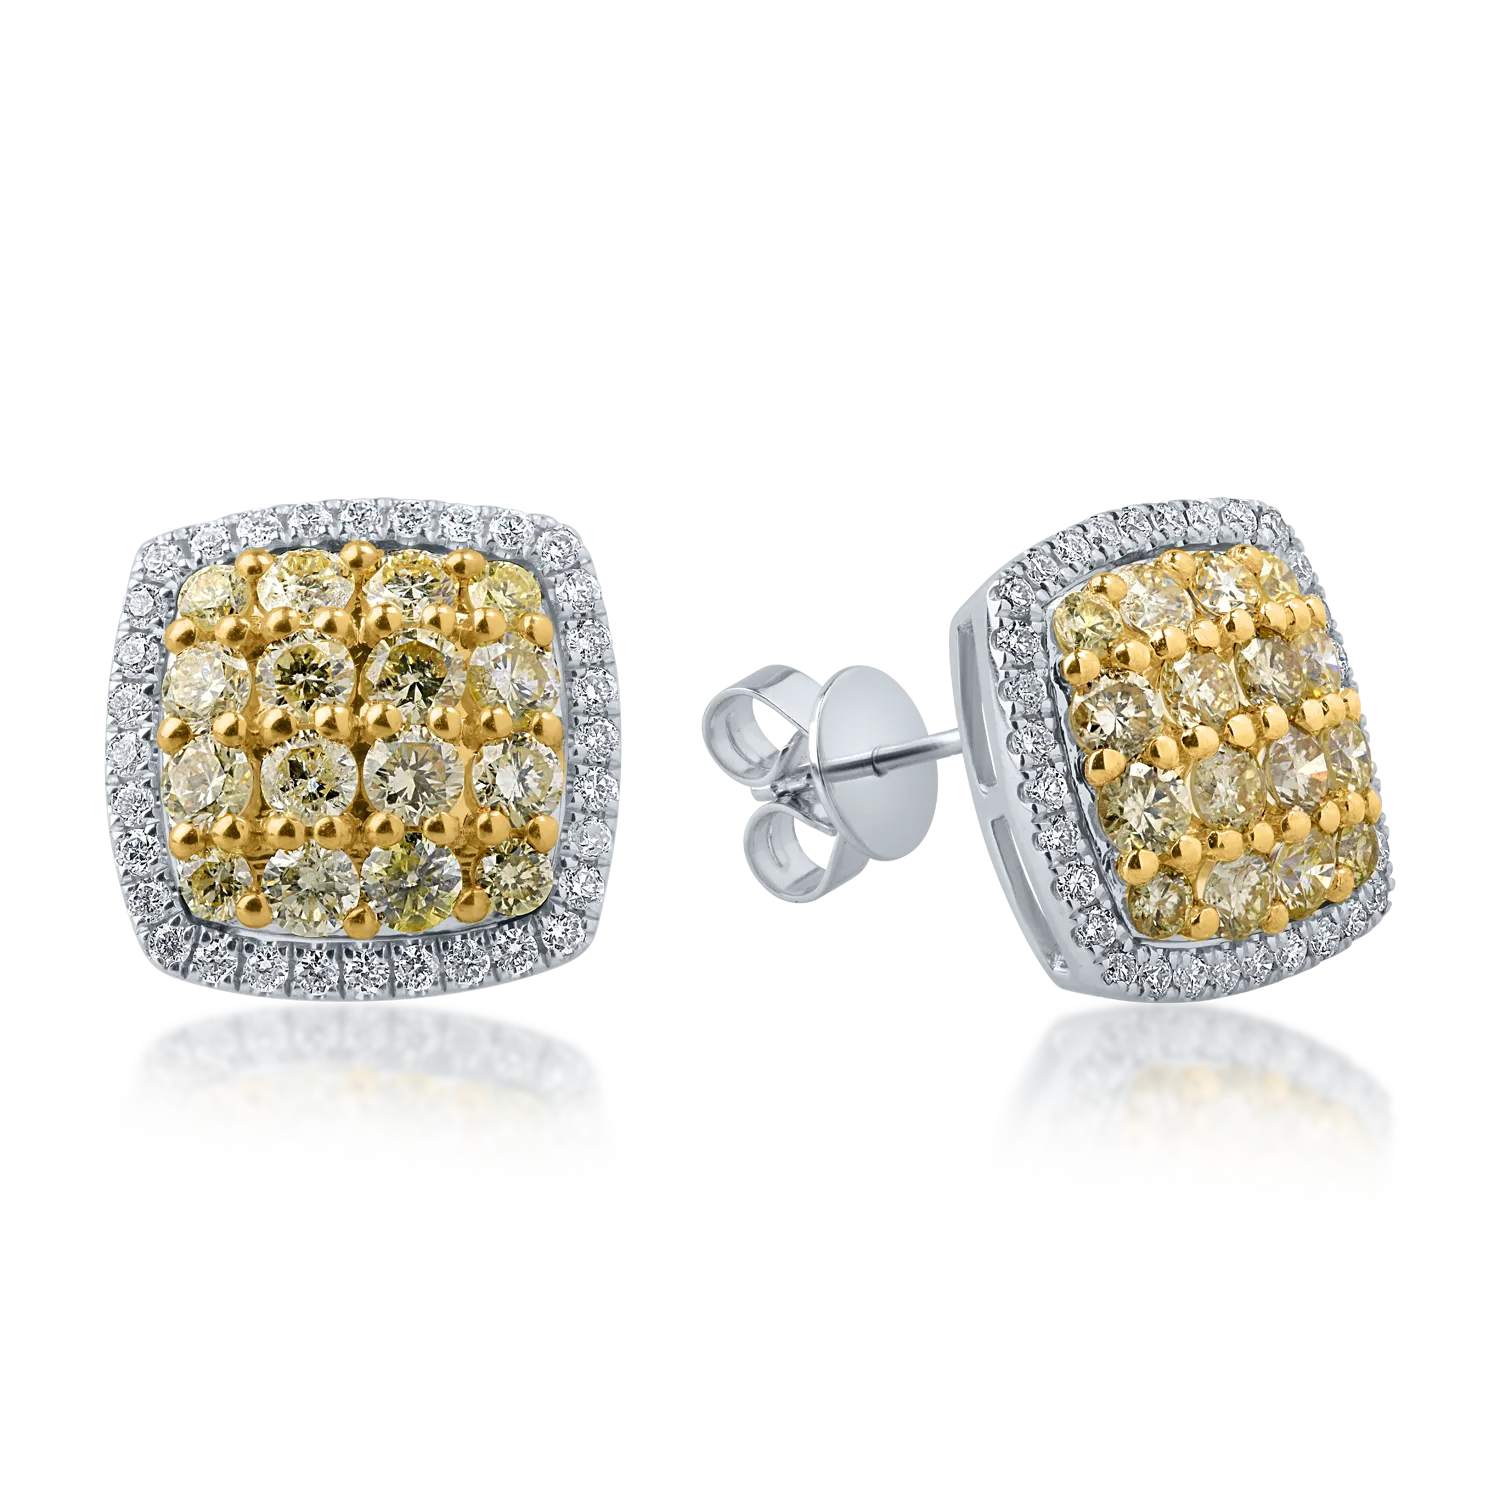 Kolczyki z biało-żółtego złota z żółtymi diamentami o masie 0.99ct i przezroczystymi diamentami o masie 0.24ct